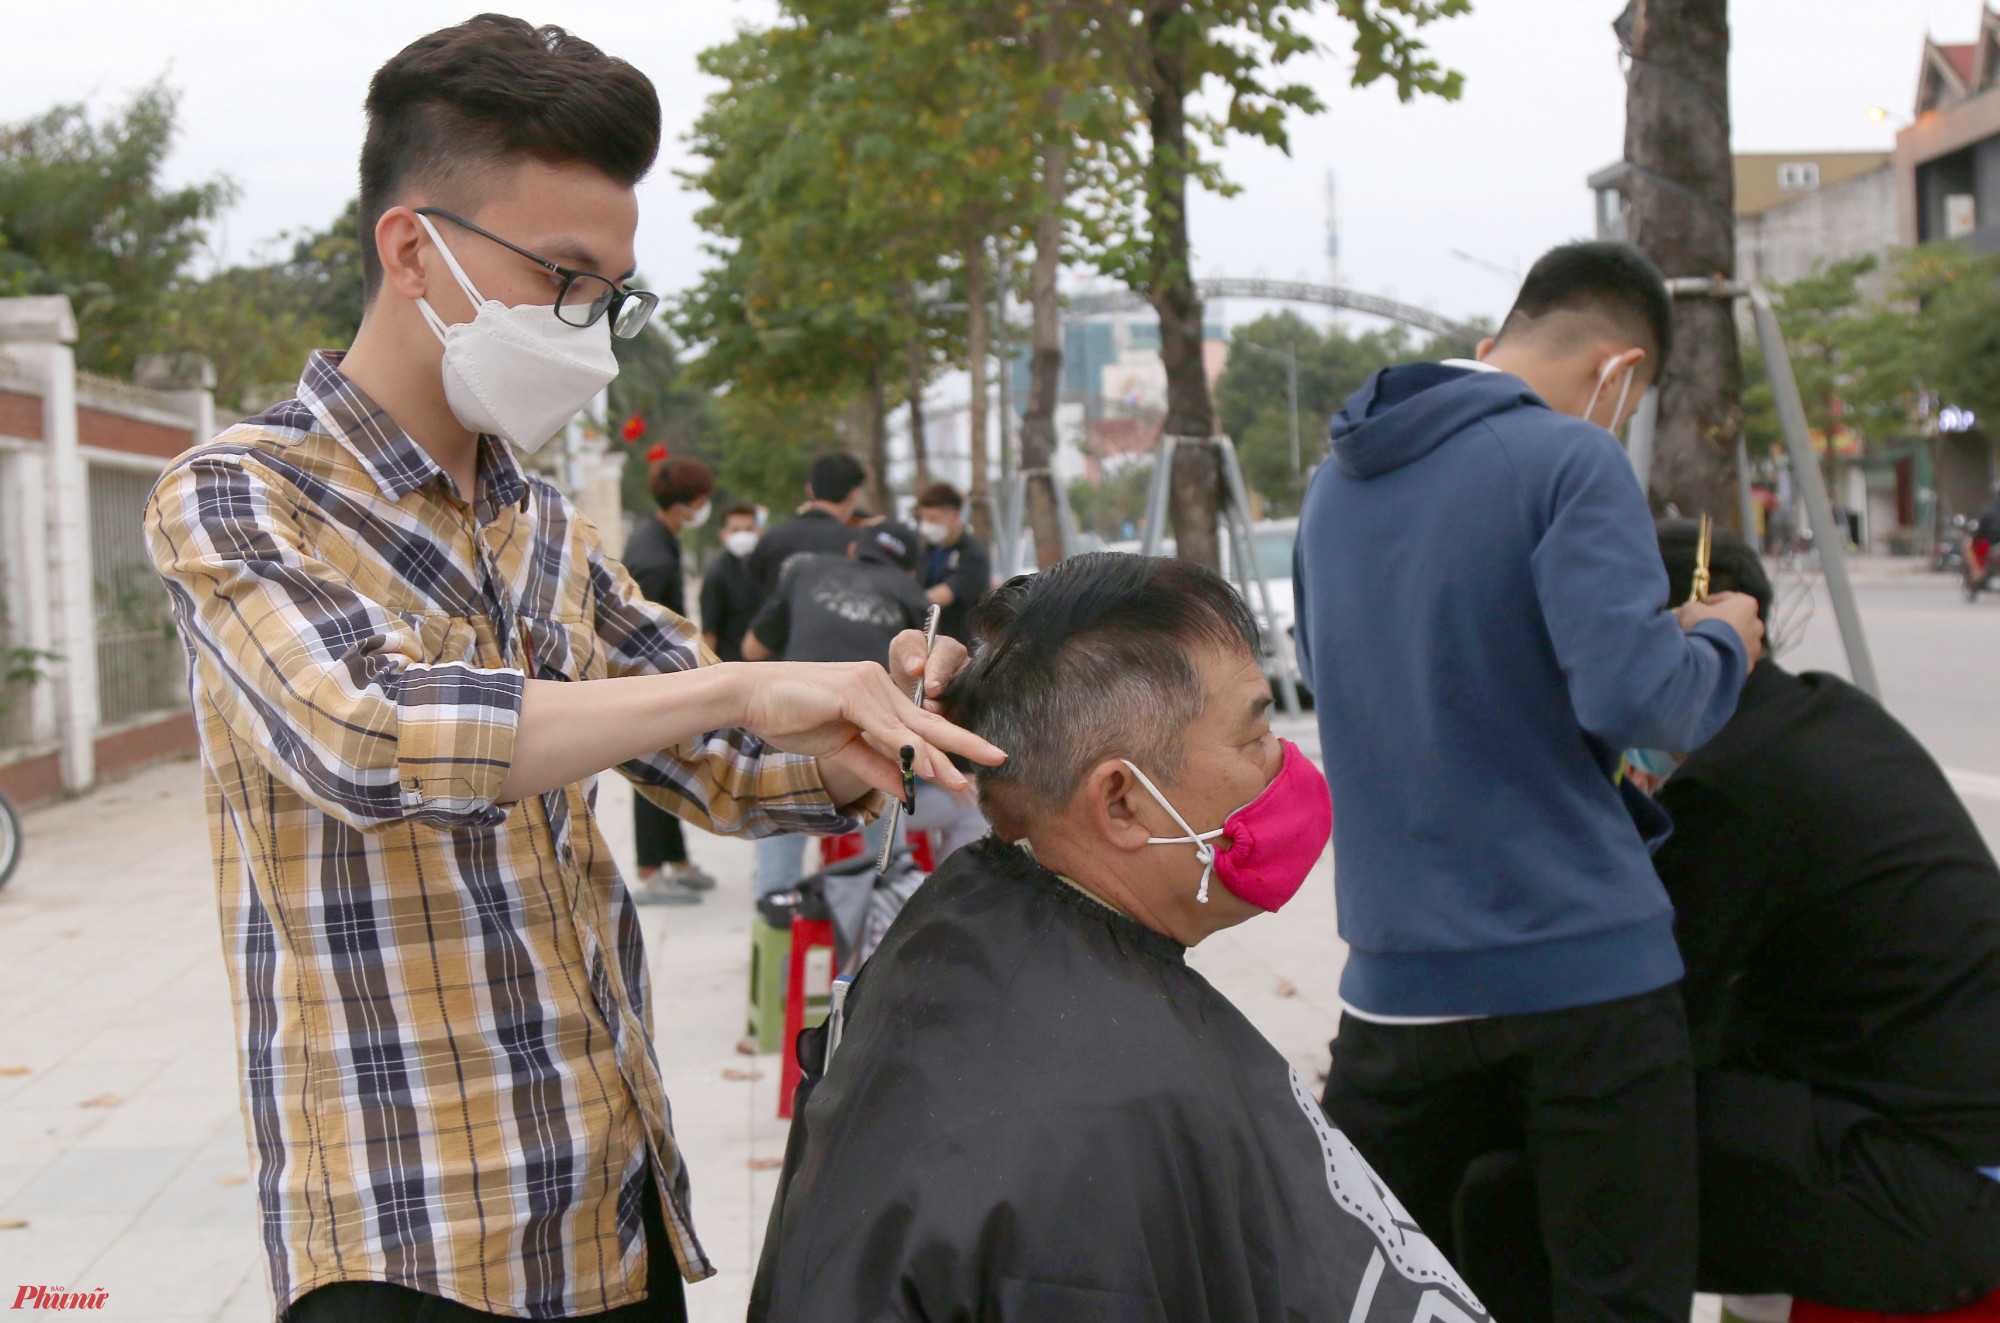 Anh Nguyễn Thái Sơn (28 tuổi, chủ một salon tóc ở TP.Vinh) cho biết, điểm cắt tóc miễn phí của anh hoạt động từ 15g chiều cho đến lúc trời tối hàng ngày. Trung bình mỗi ngày cả nhóm cắt được cho khoảng 50-60 người, cao điểm có ngày nhóm đón gần 100 khách hàng.